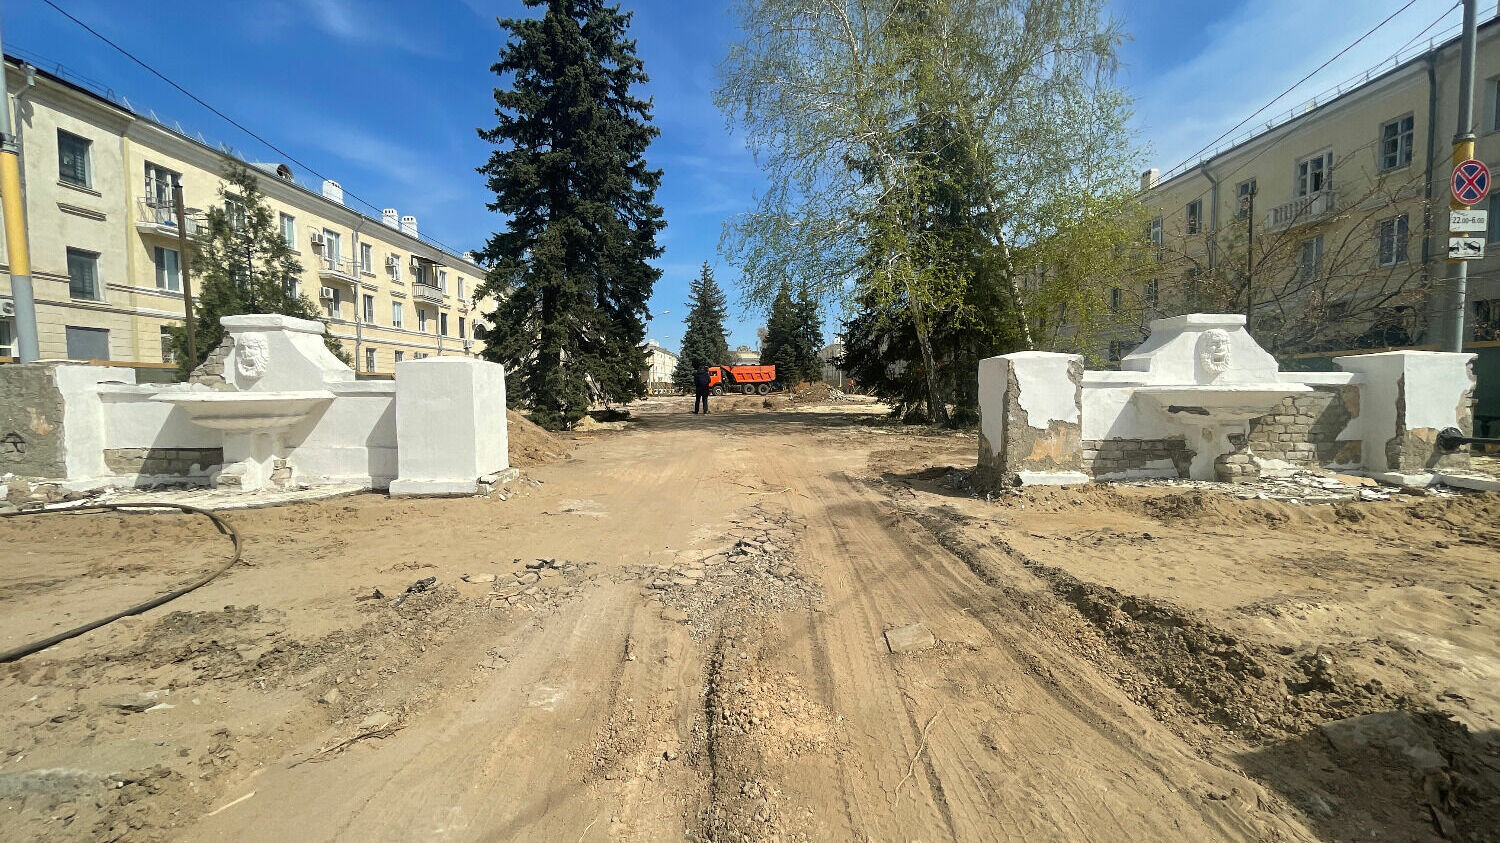 Улица Фонтанная в городе Волжском в состоянии ремонта.